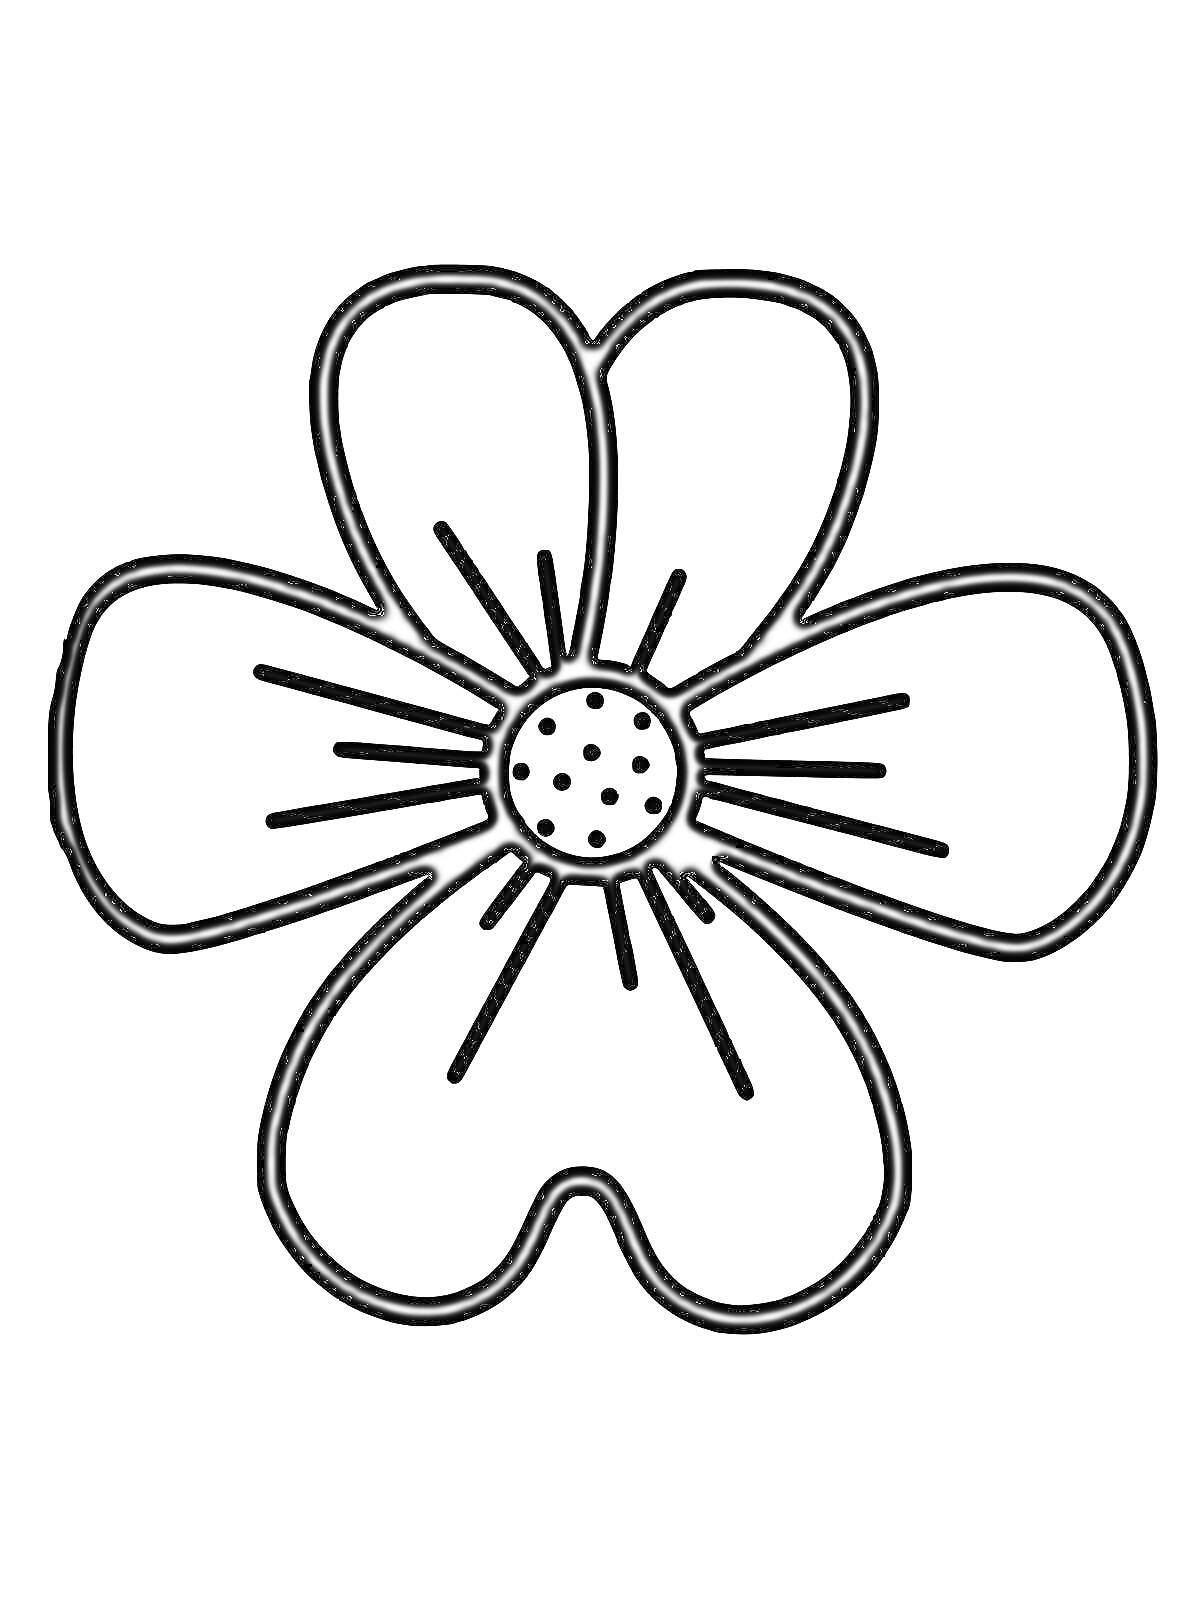 Раскраска Простая раскраска цветок с пятью лепестками и точками в центре